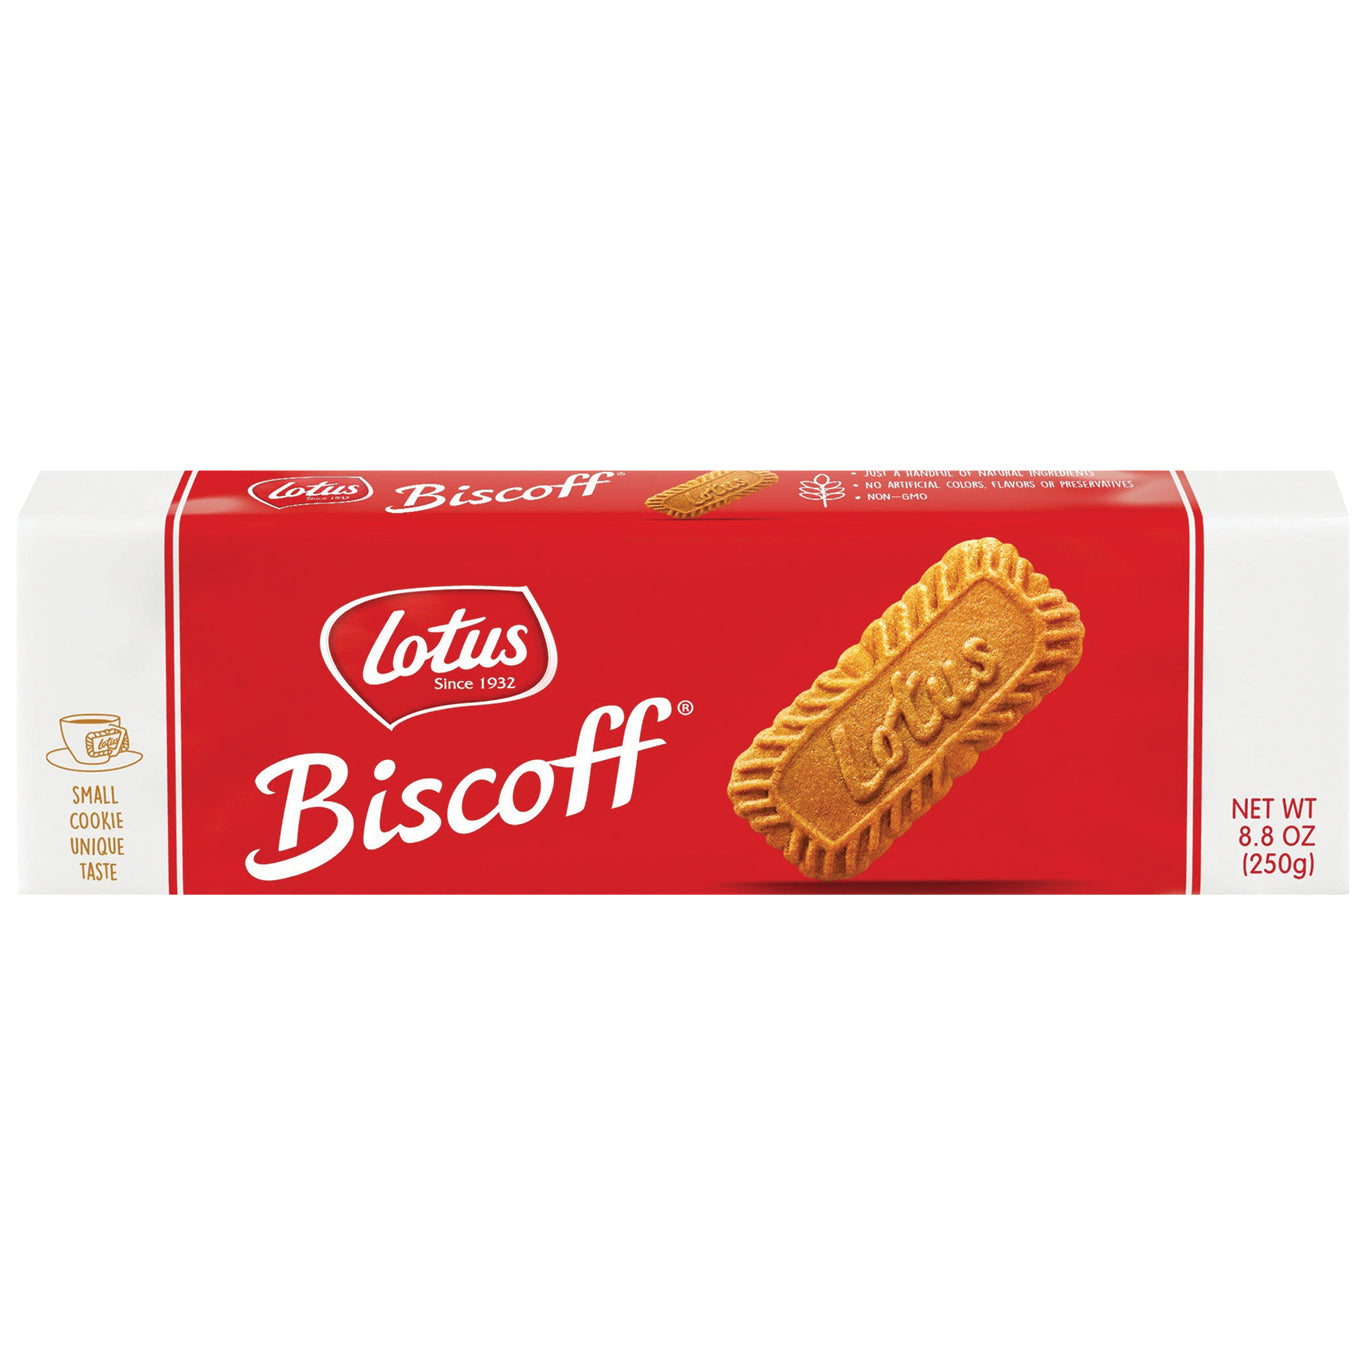 Biscoff cookies